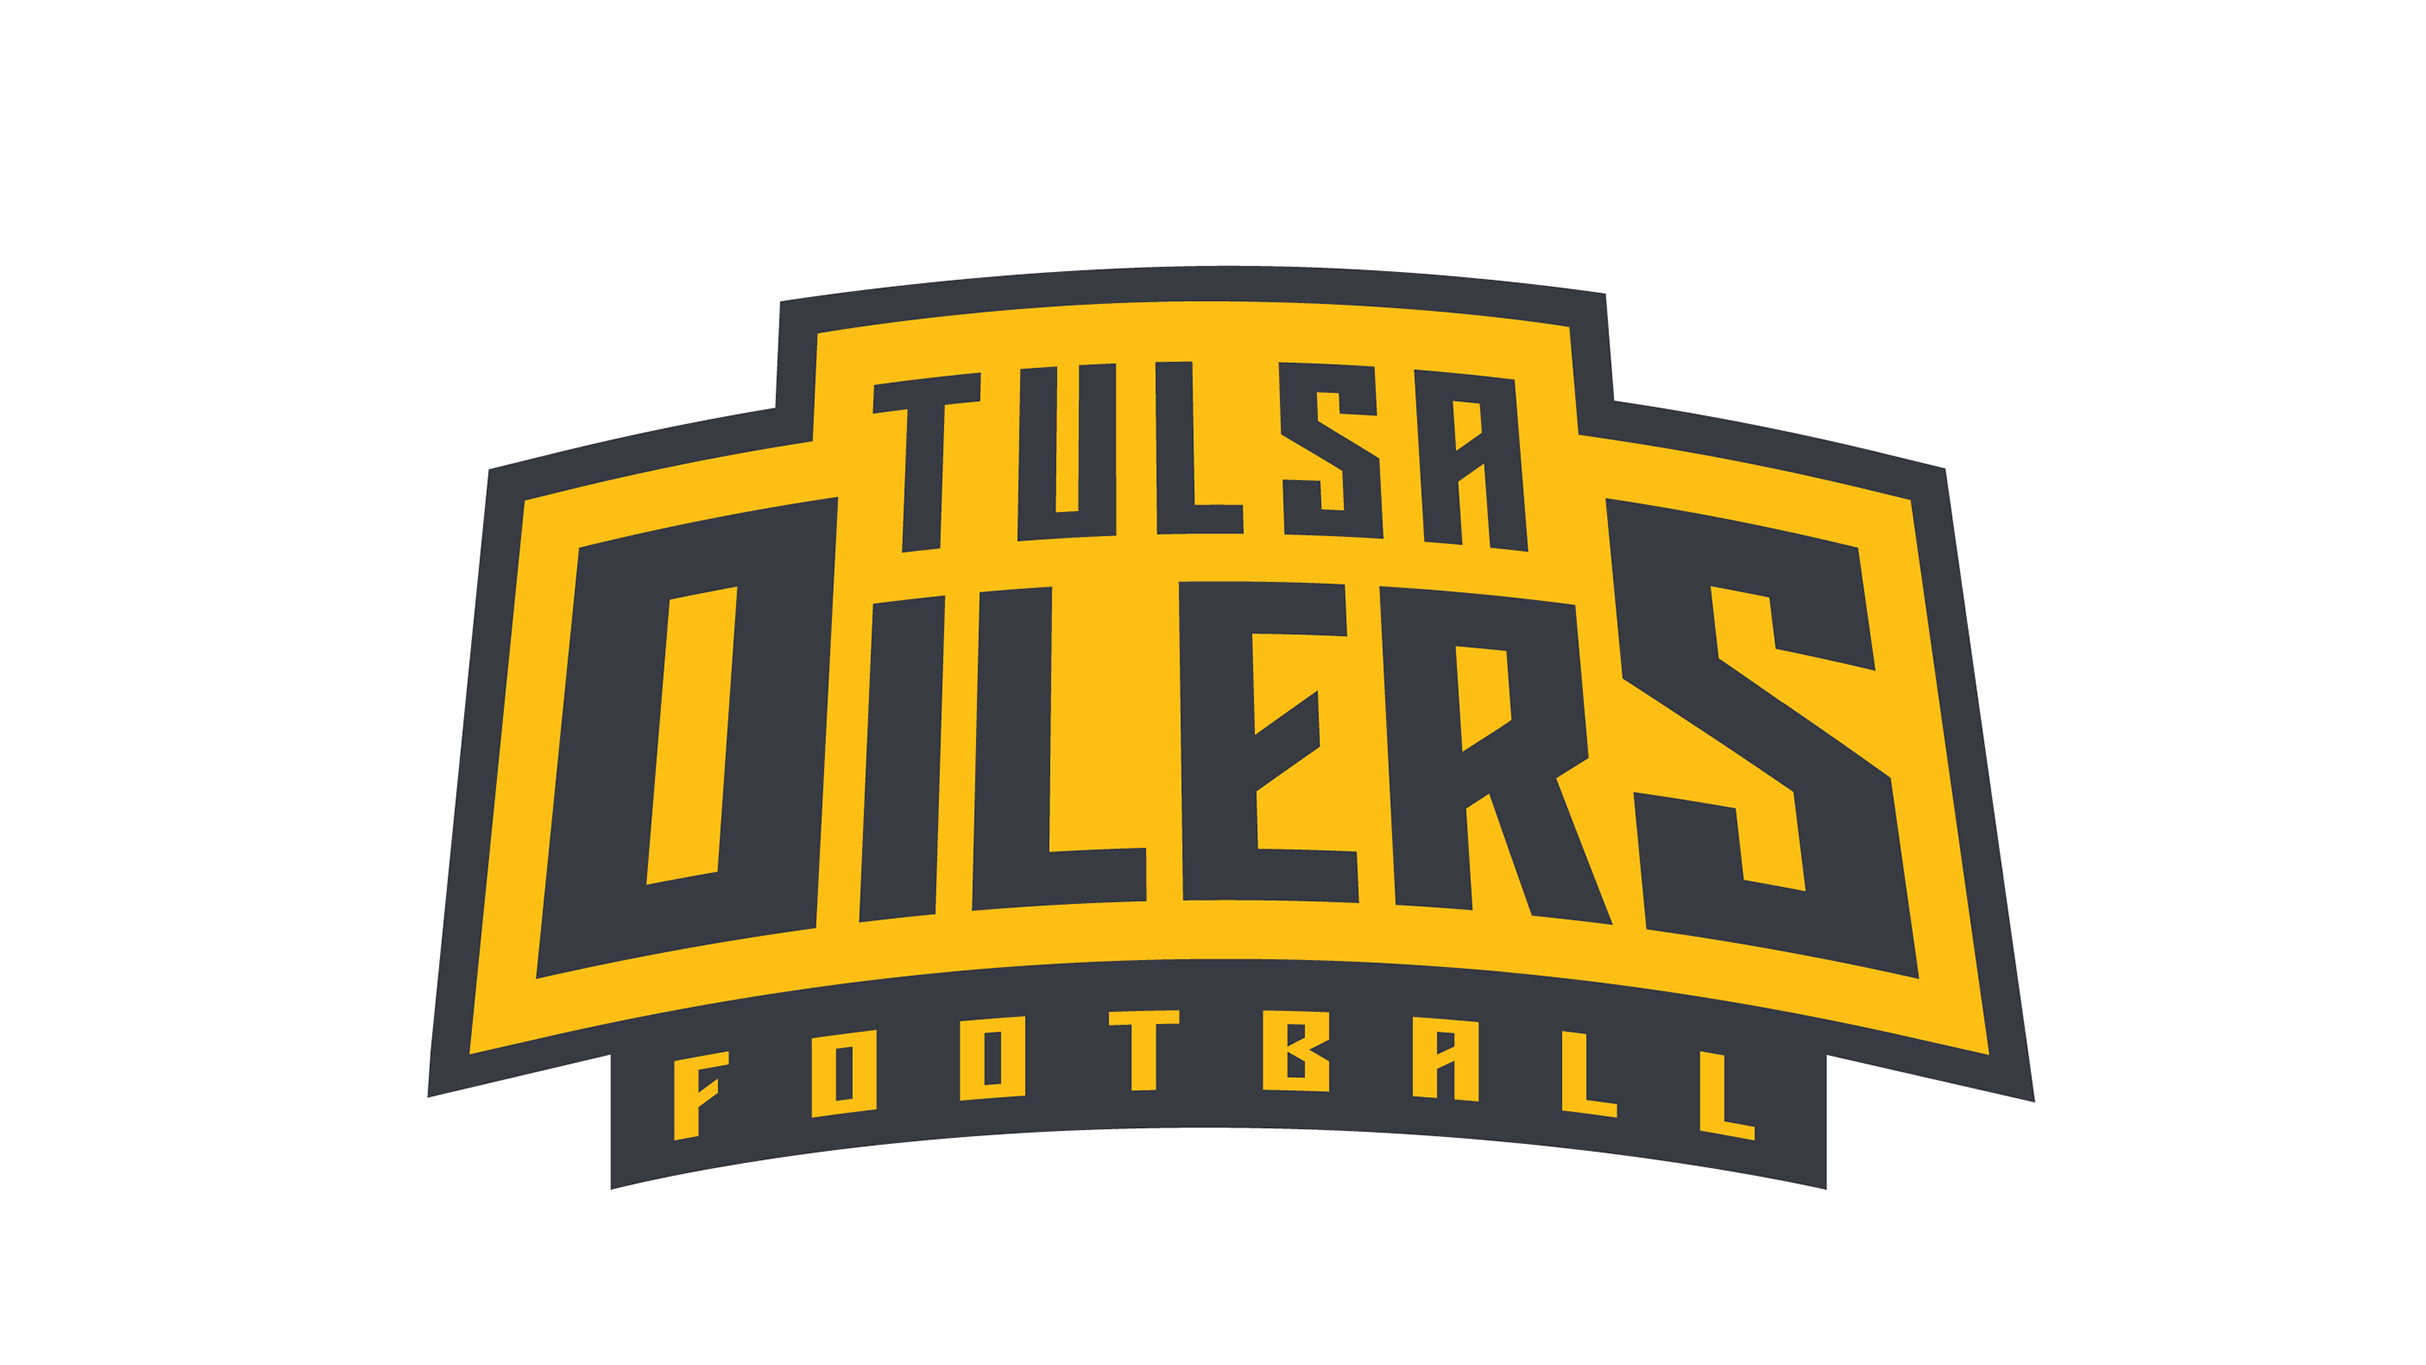 Tulsa Oilers Football